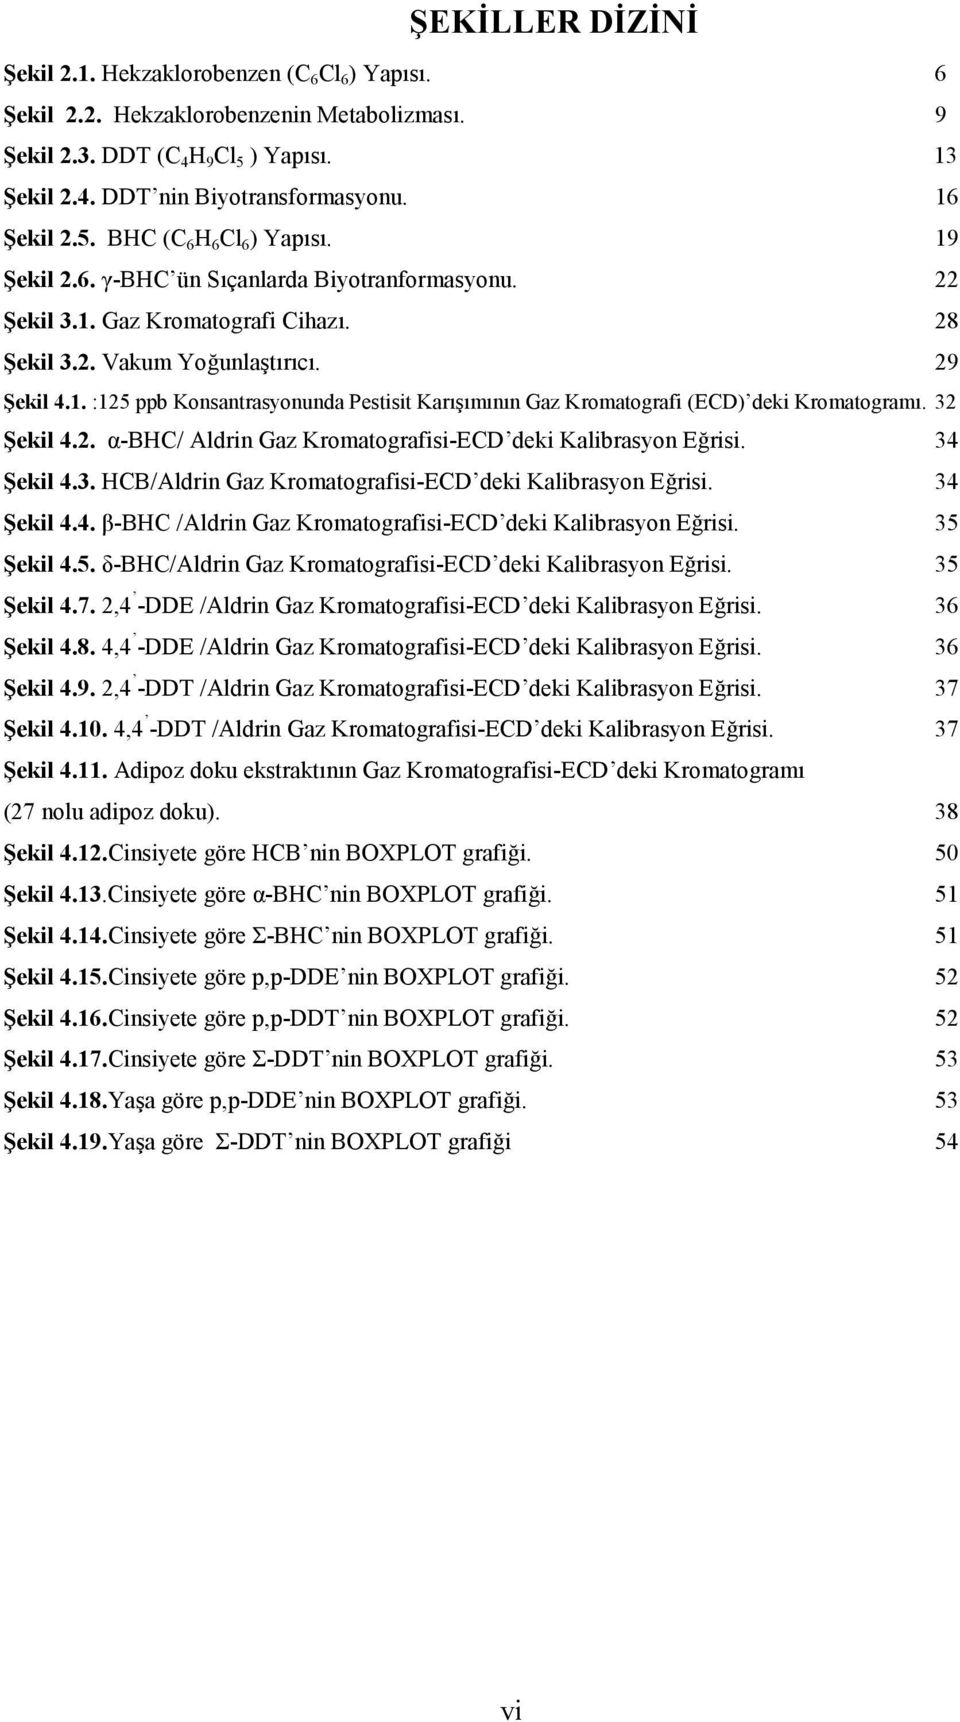 32 Şekil 4.2. α-bhc/ Aldrin Gaz Kromatografisi-ECD deki Kalibrasyon Eğrisi. 34 Şekil 4.3. HCB/Aldrin Gaz Kromatografisi-ECD deki Kalibrasyon Eğrisi. 34 Şekil 4.4. β-bhc /Aldrin Gaz Kromatografisi-ECD deki Kalibrasyon Eğrisi.